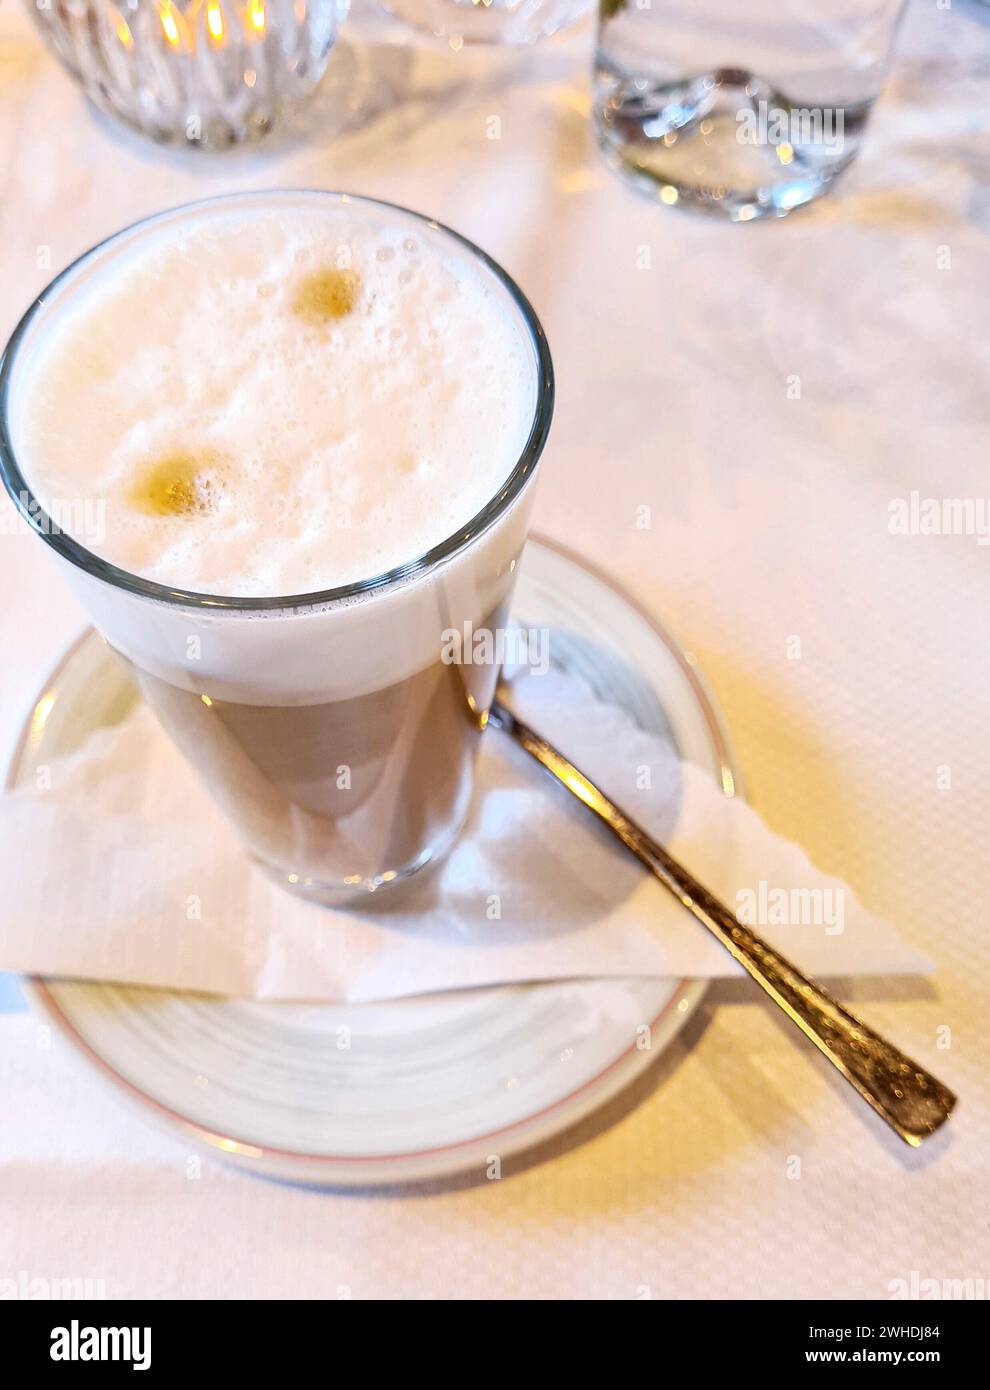 Kaffee mit Milchschaum im Glas auf einer Untertasse und Löffel auf einer Serviette steht auf einer weißen Tischdecke Stockfoto